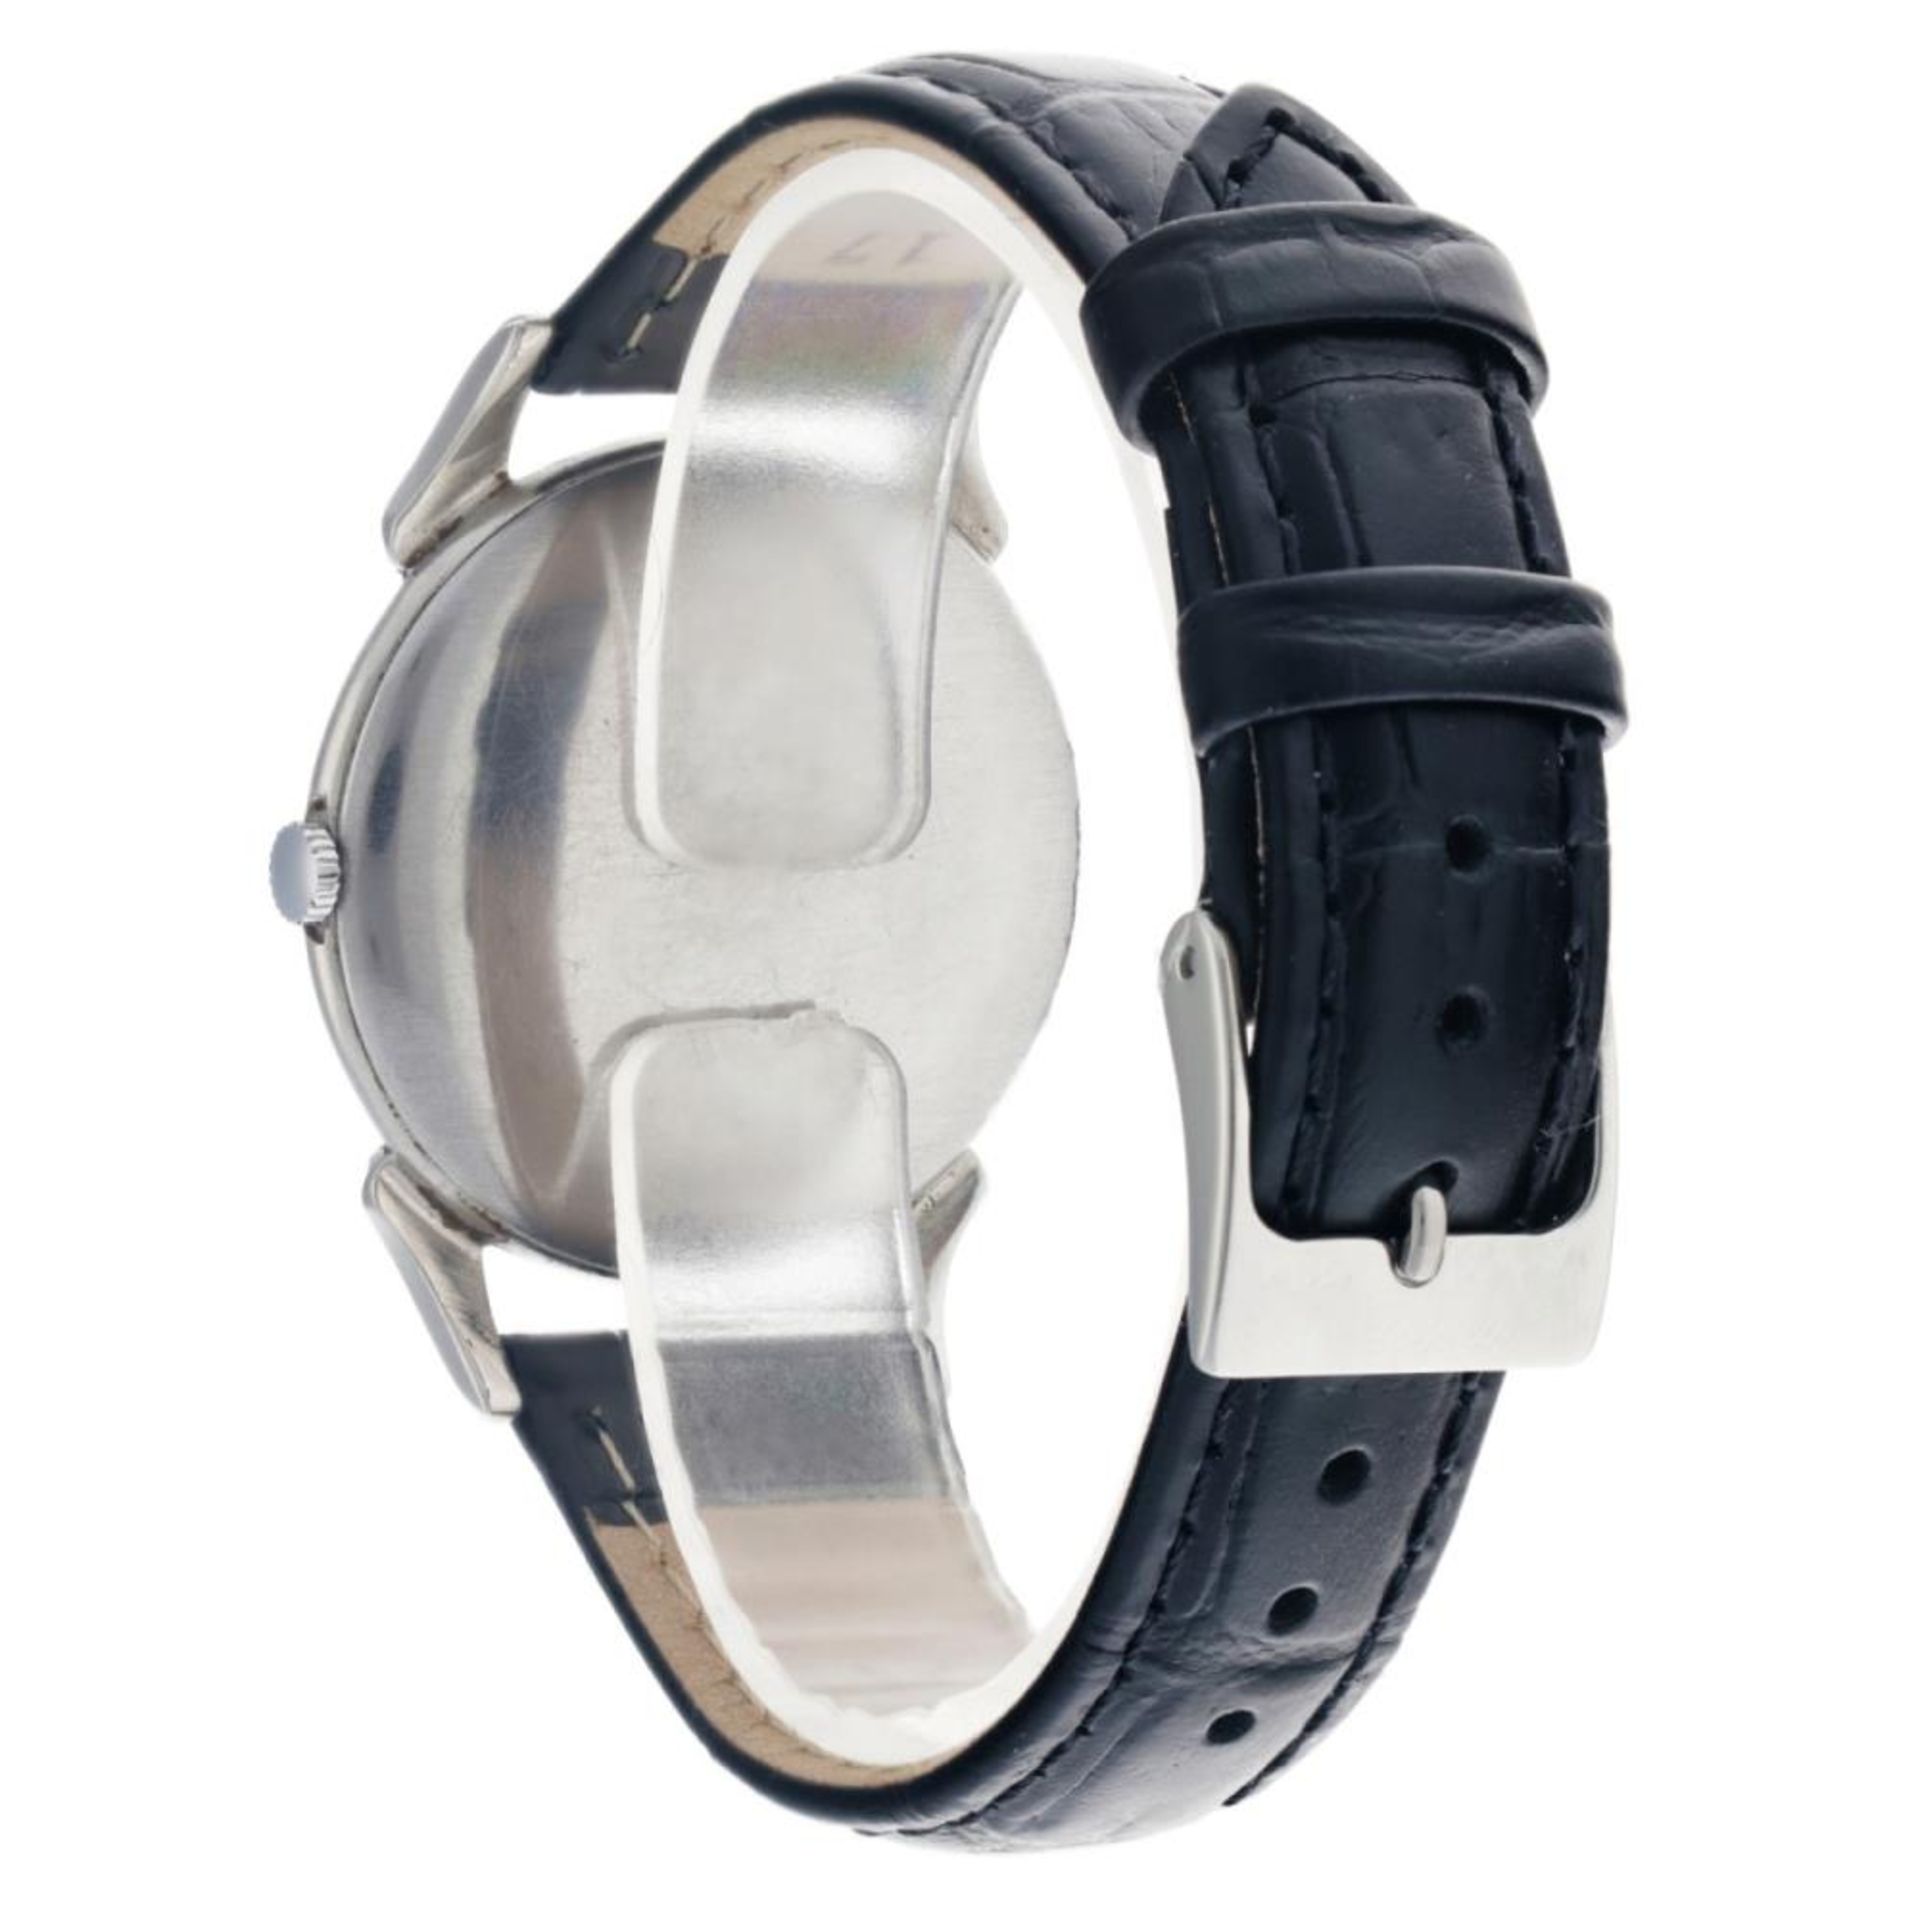 Girard-Perregaux Dogleg 494779 - Men's watch - approx. 1950. - Image 6 of 14